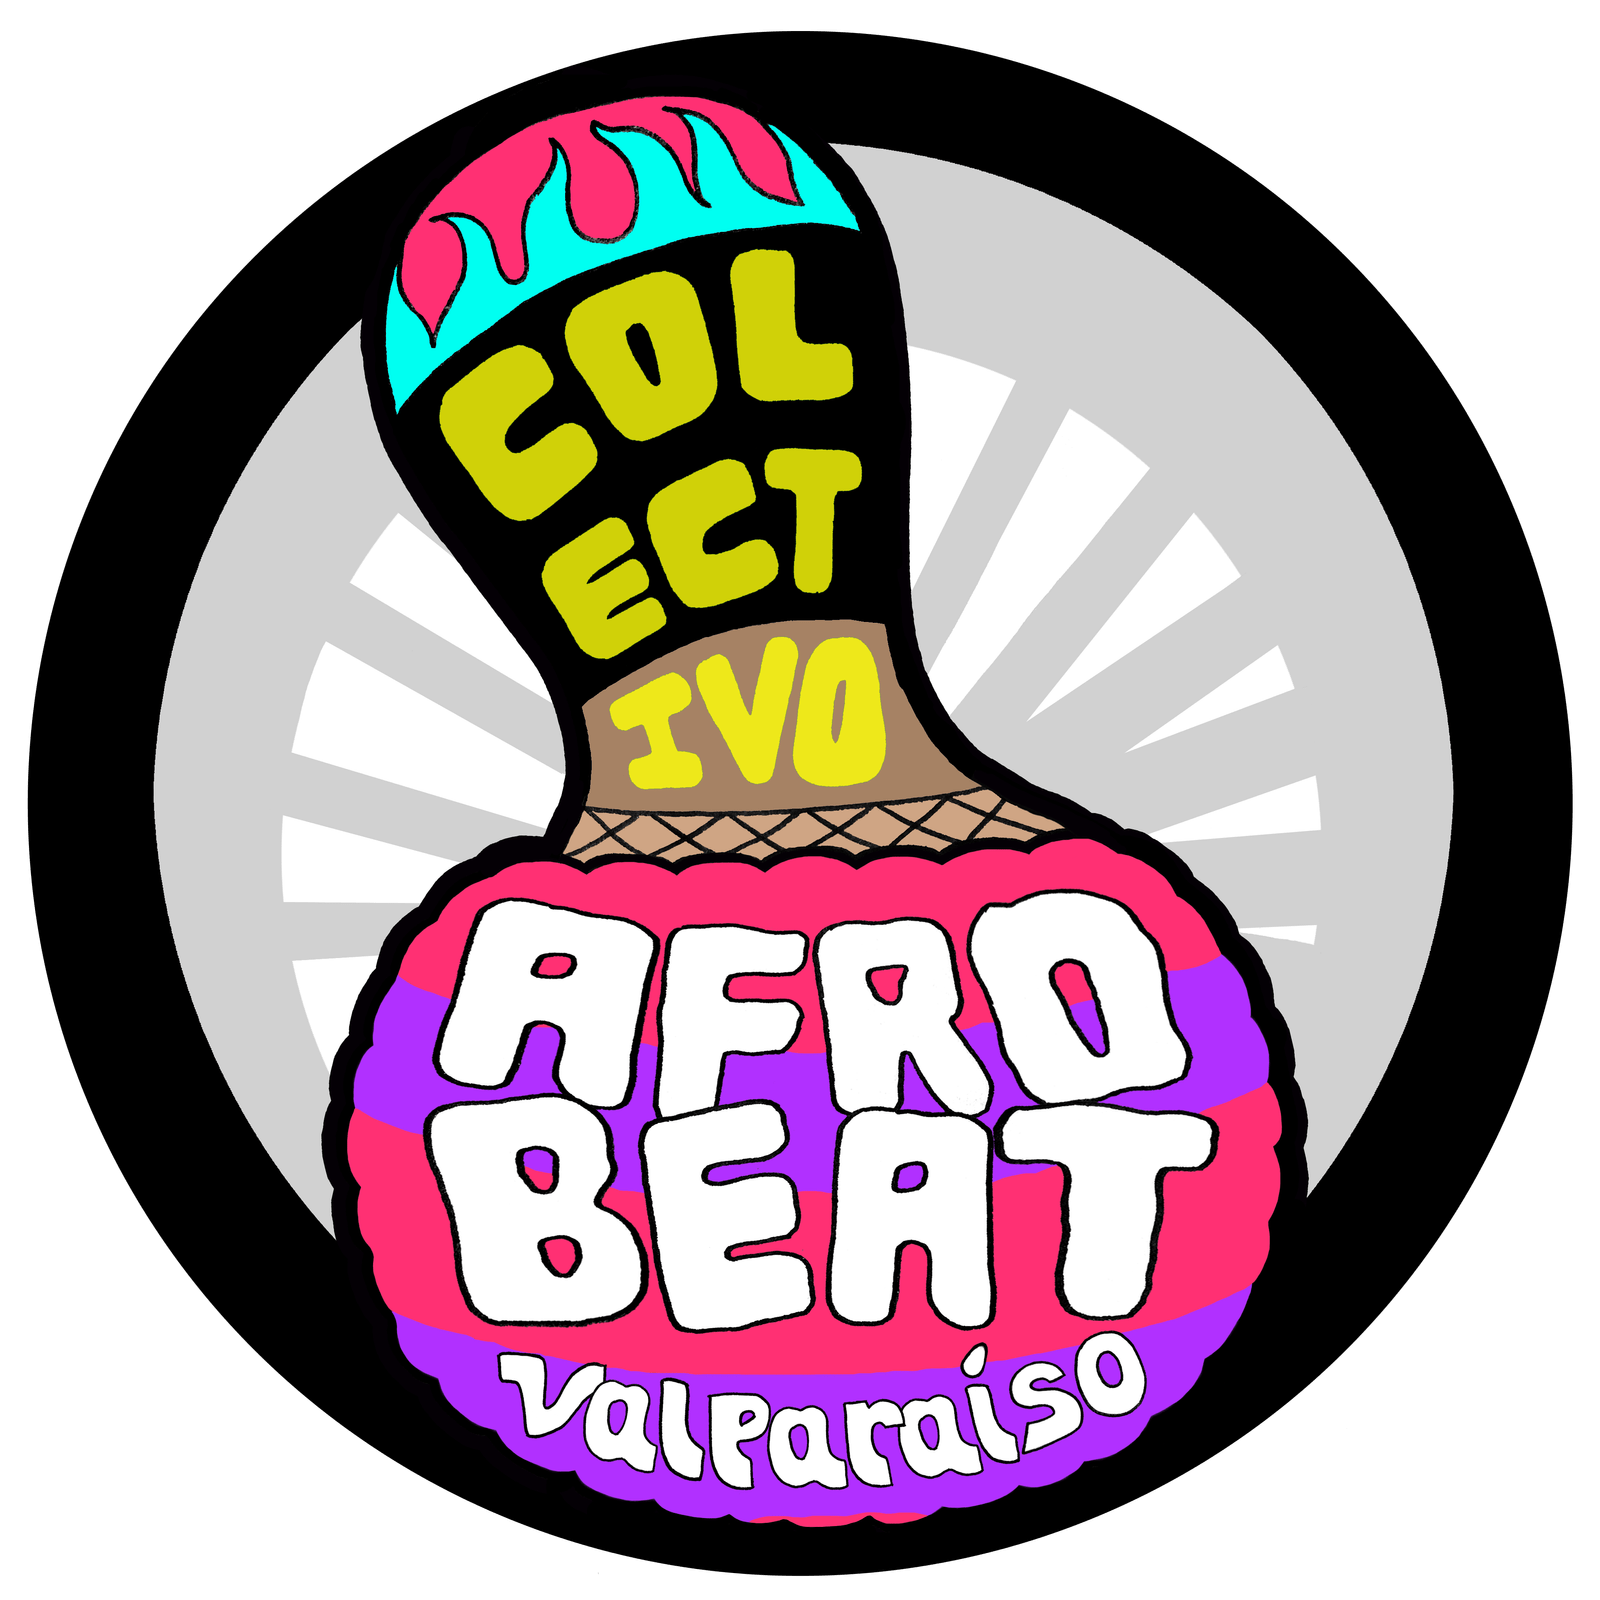 Colectivo Afrobeat Valparaíso